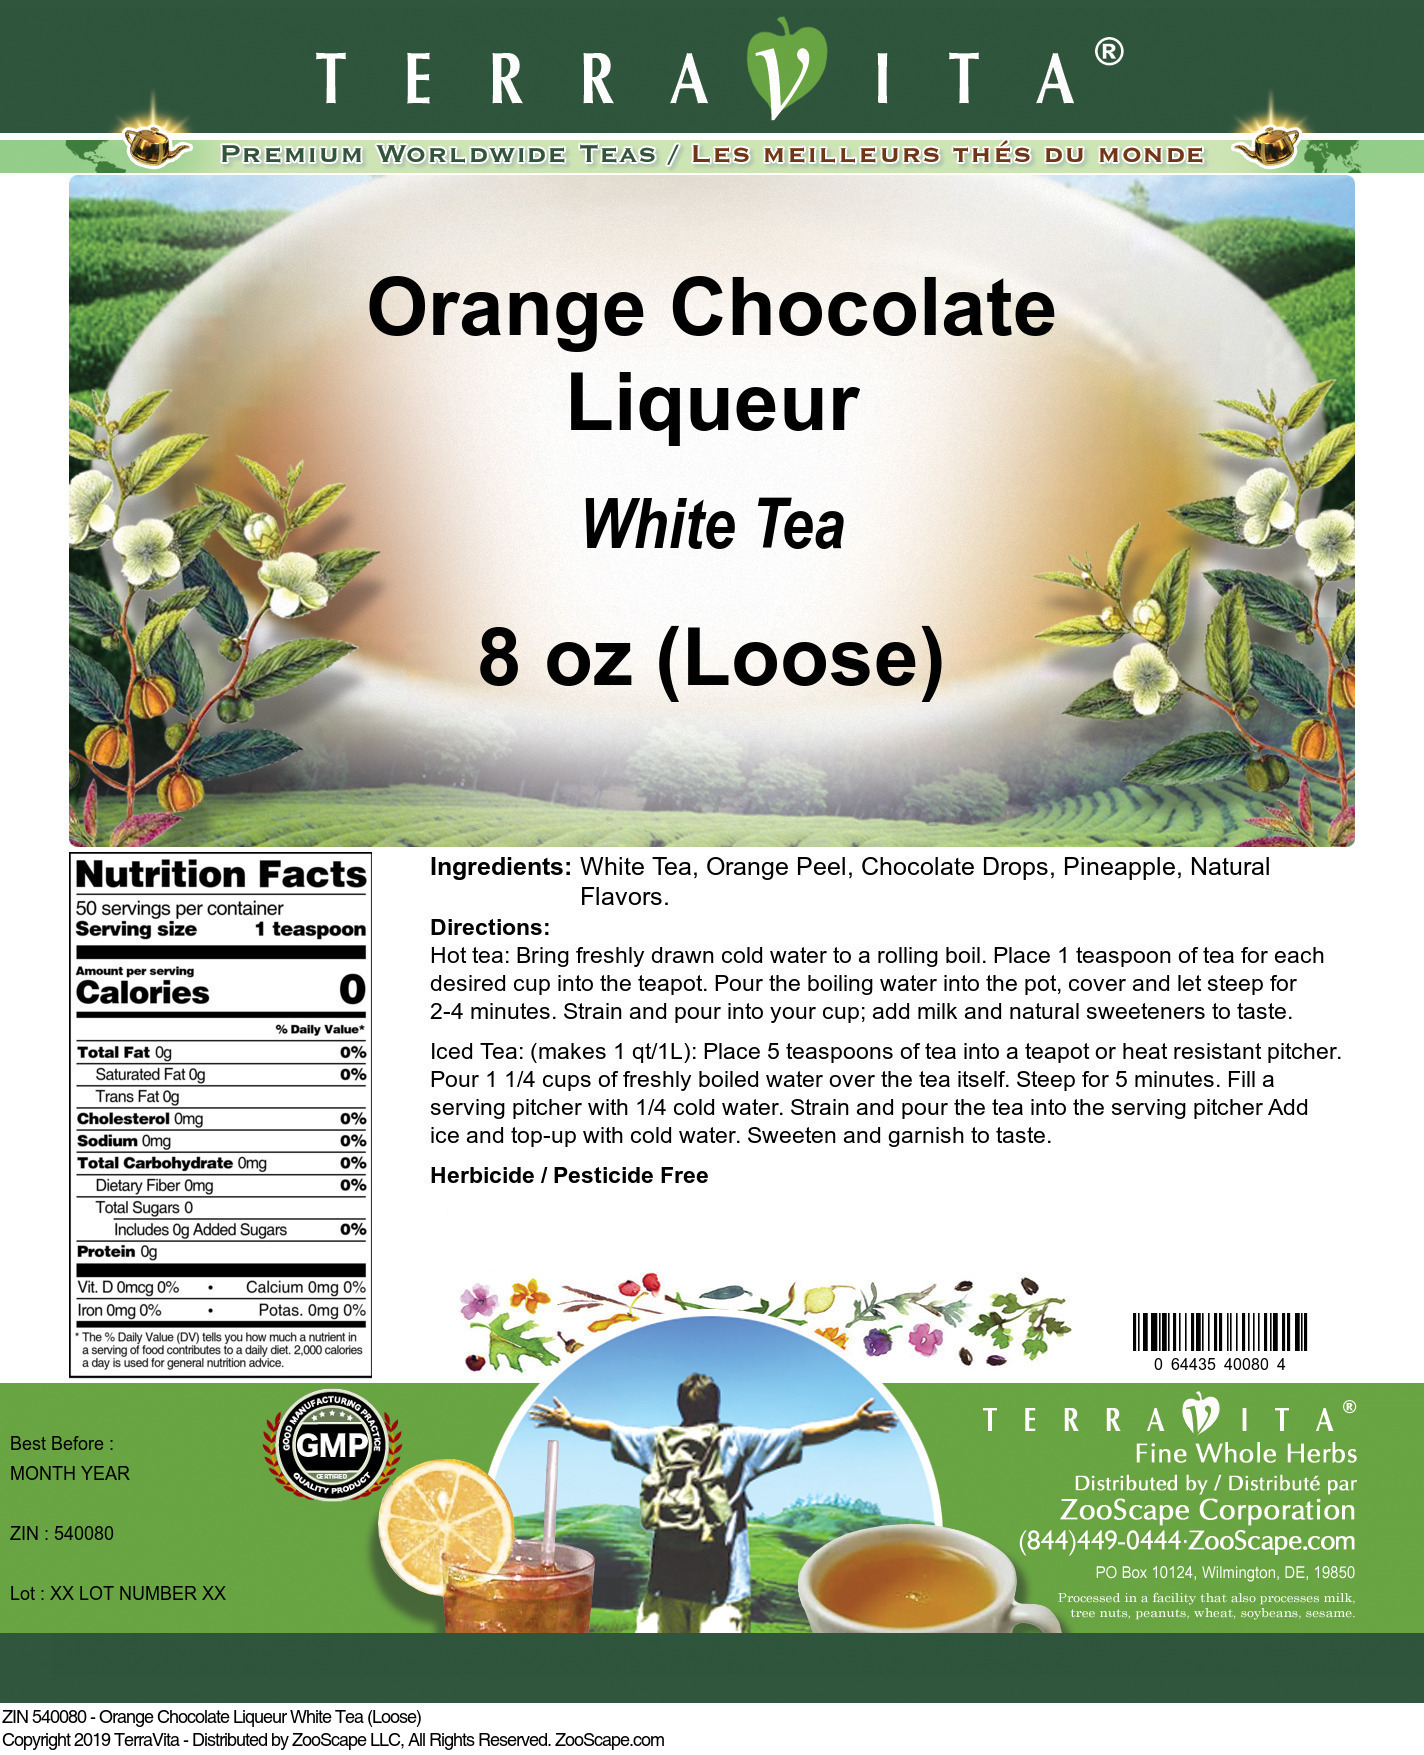 Orange Chocolate Liqueur White Tea (Loose) - Label